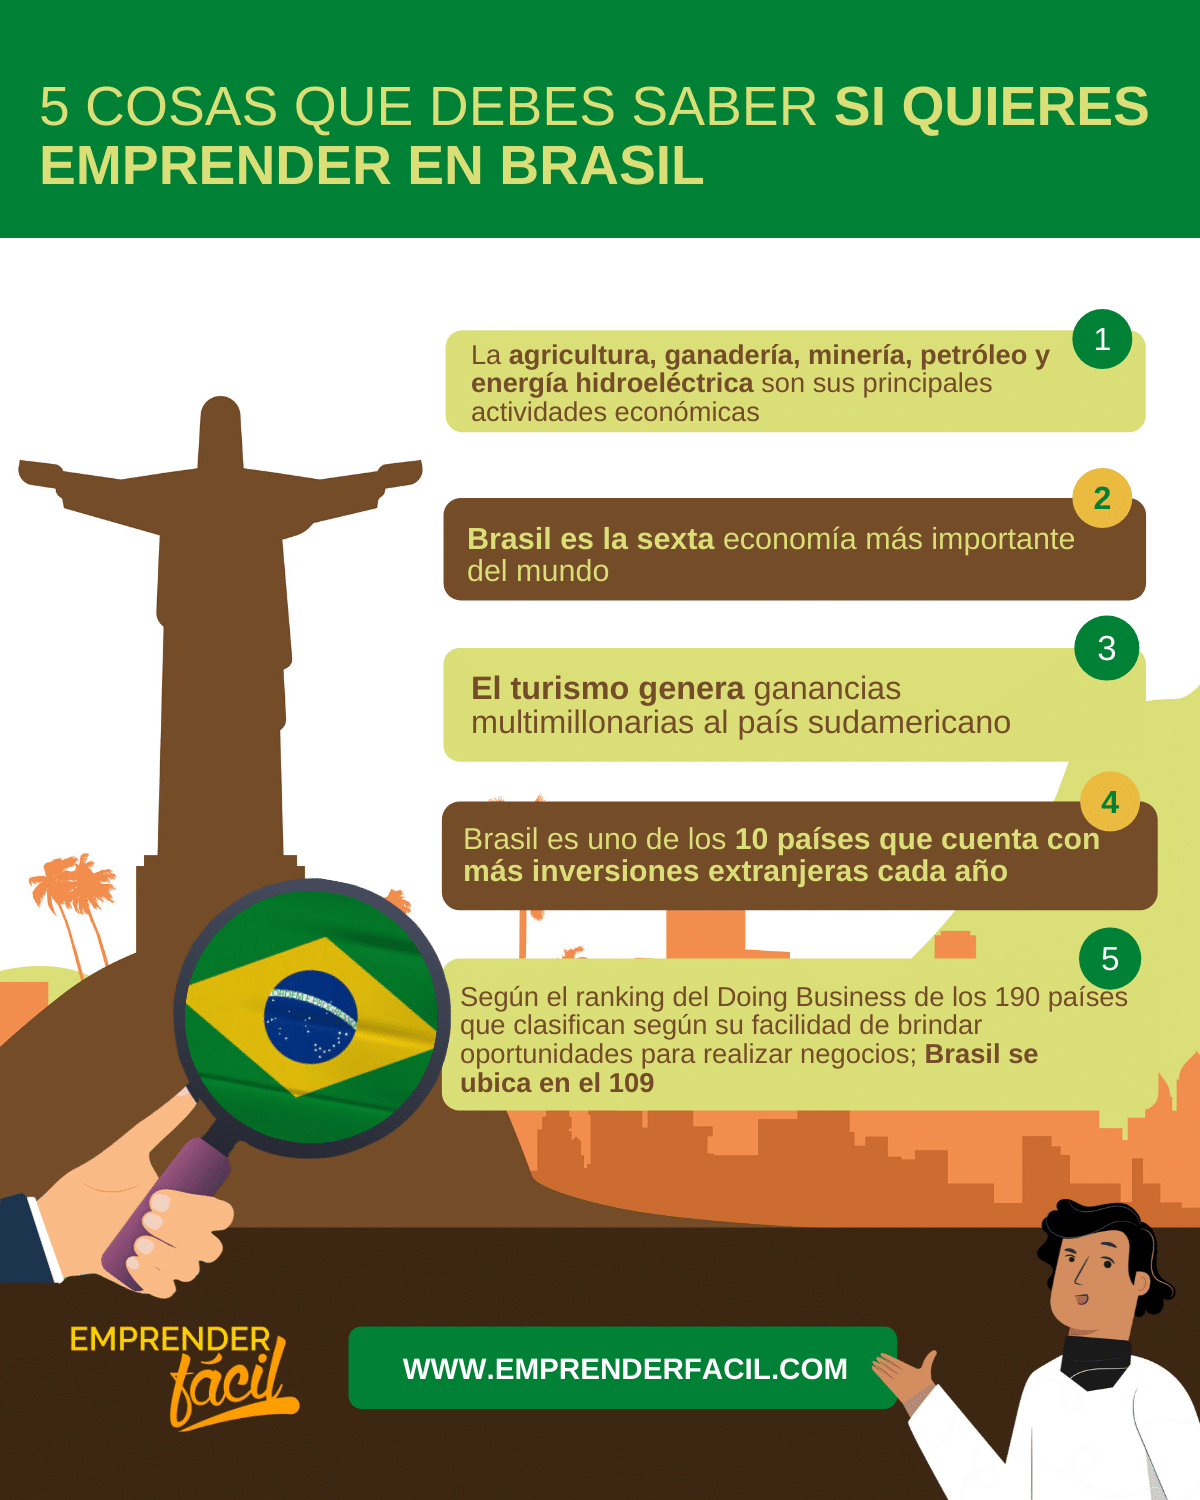 Datos de interés sobre el emprendimiento en Brasil